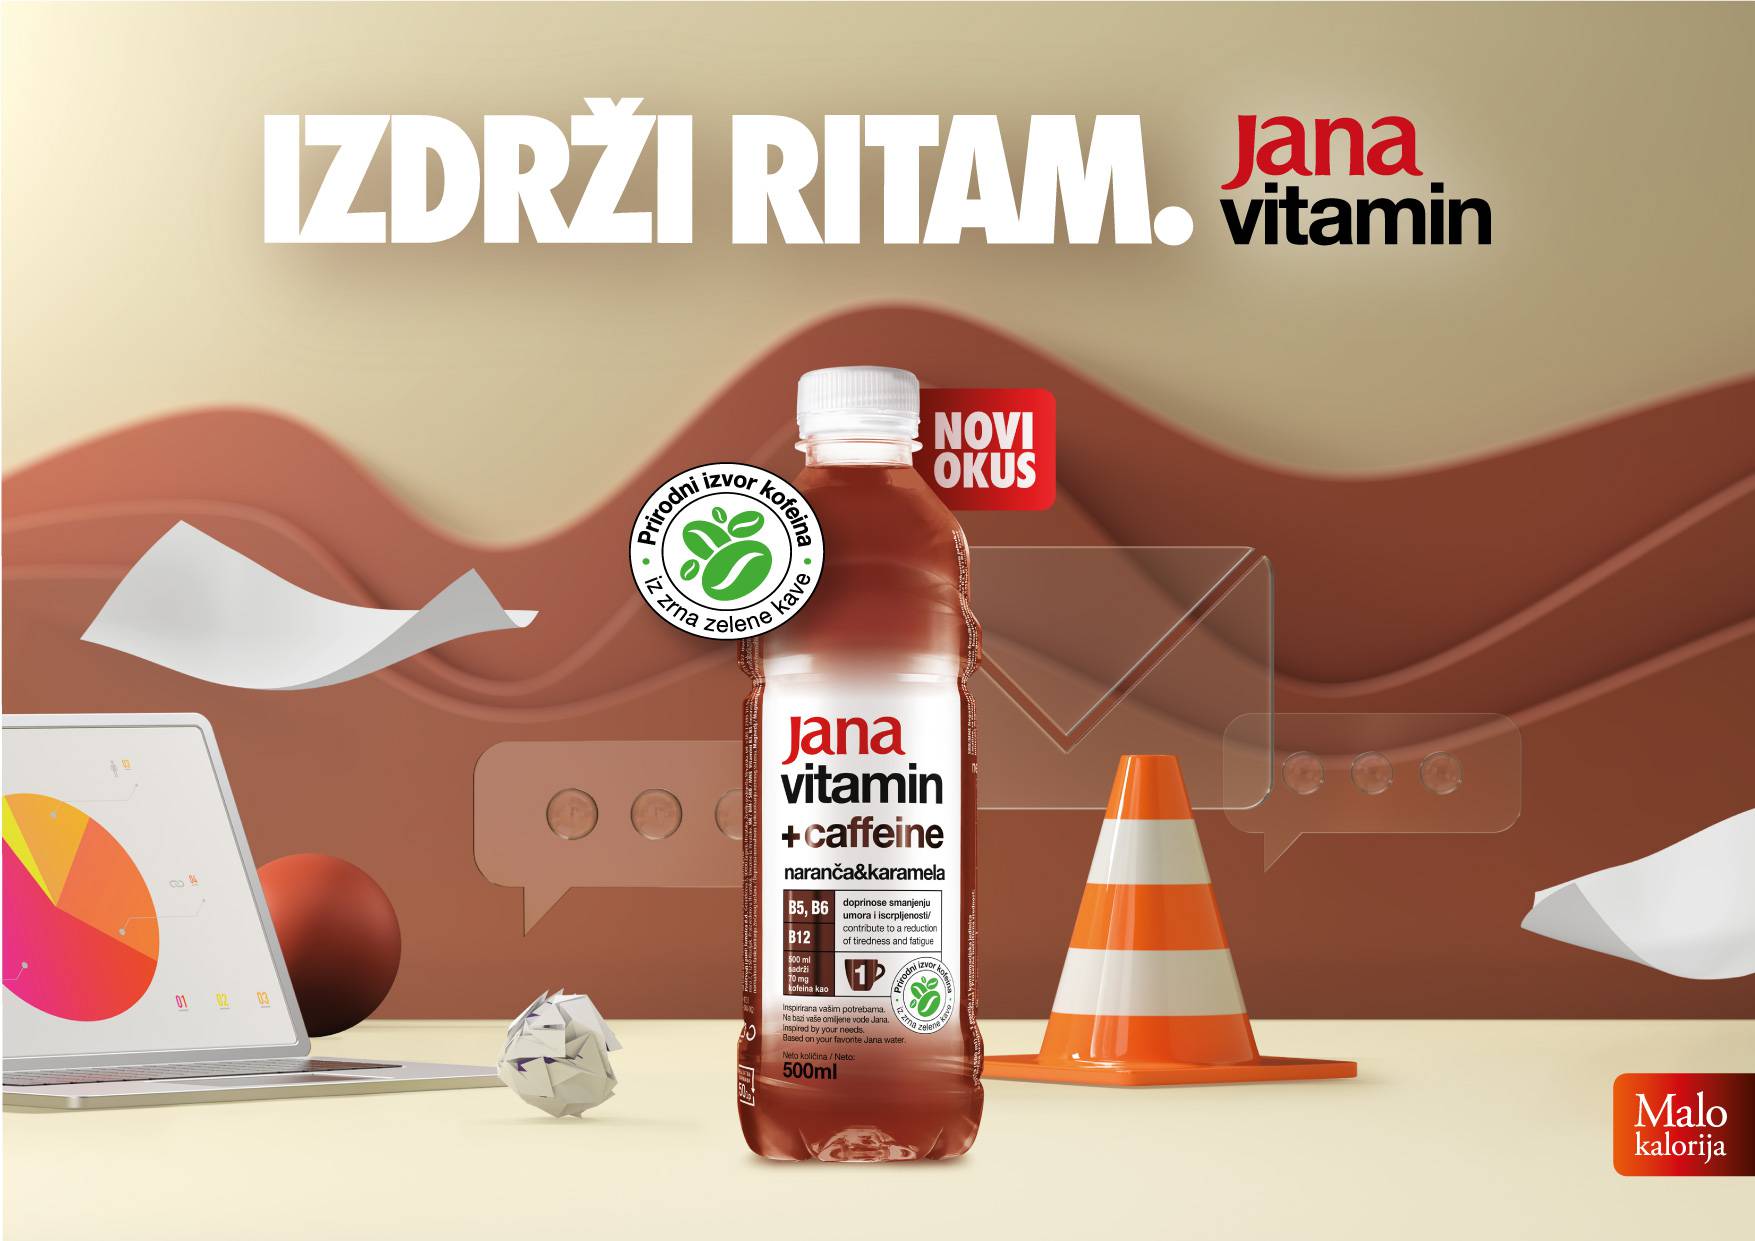 Svjetski trend i na hrvatskom tržištu: Jana vitamin s kofeinom - nova članica Jana obitelji